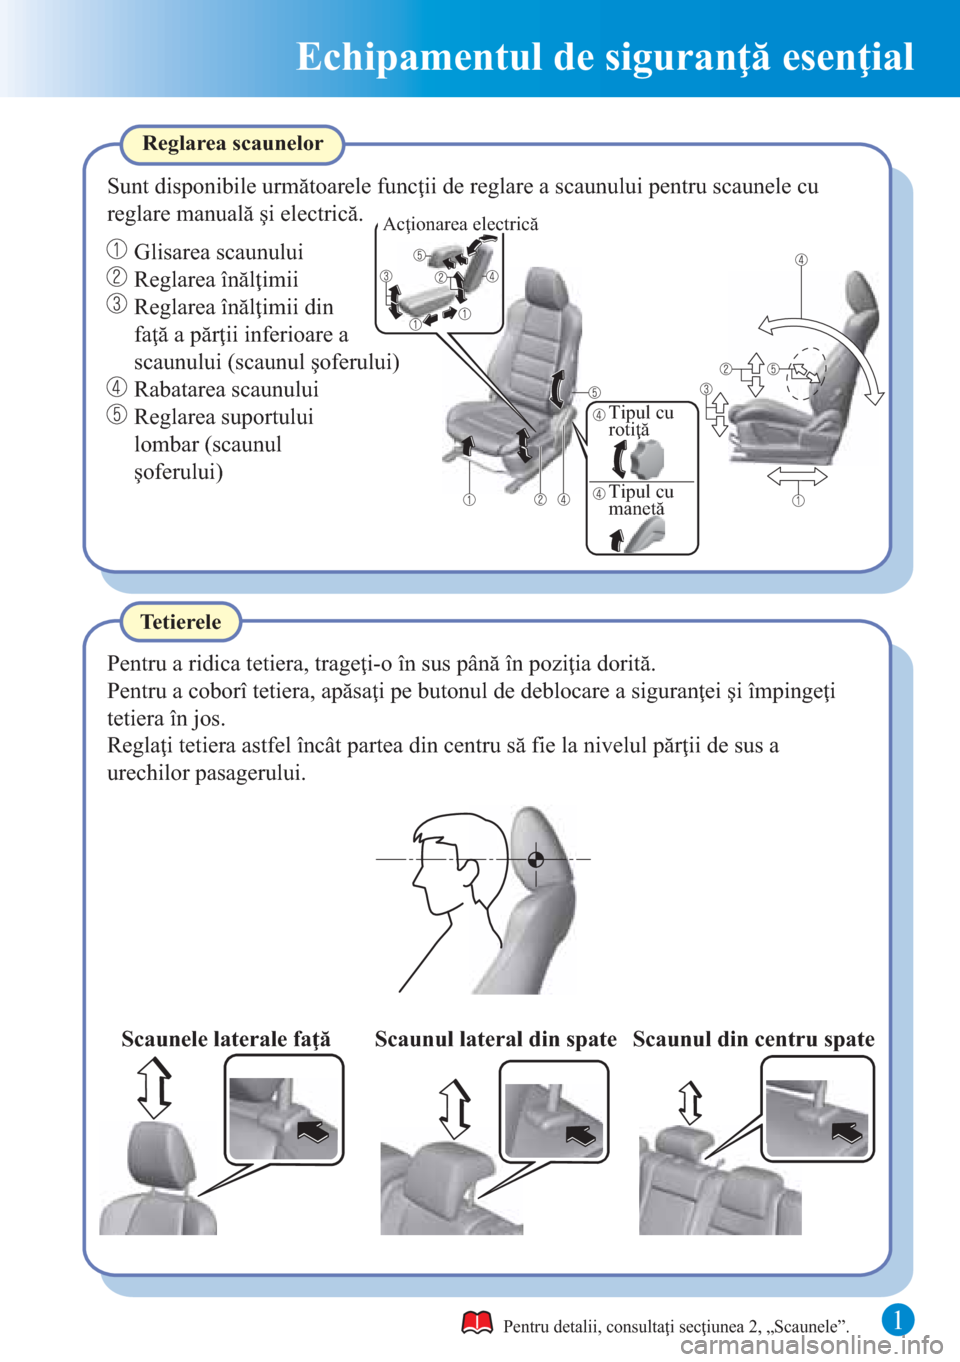 MAZDA MODEL CX-5 2015  Ghid introductiv (in Romanian)  1
Echipamentul de siguranţă esenţial
Pentru a ridica tetiera, trageţi-o în sus până în poziţia dorită.
TetiereleReglarea scaunelor
Sunt disponibile următoarele funcţii de reglare a scaunul